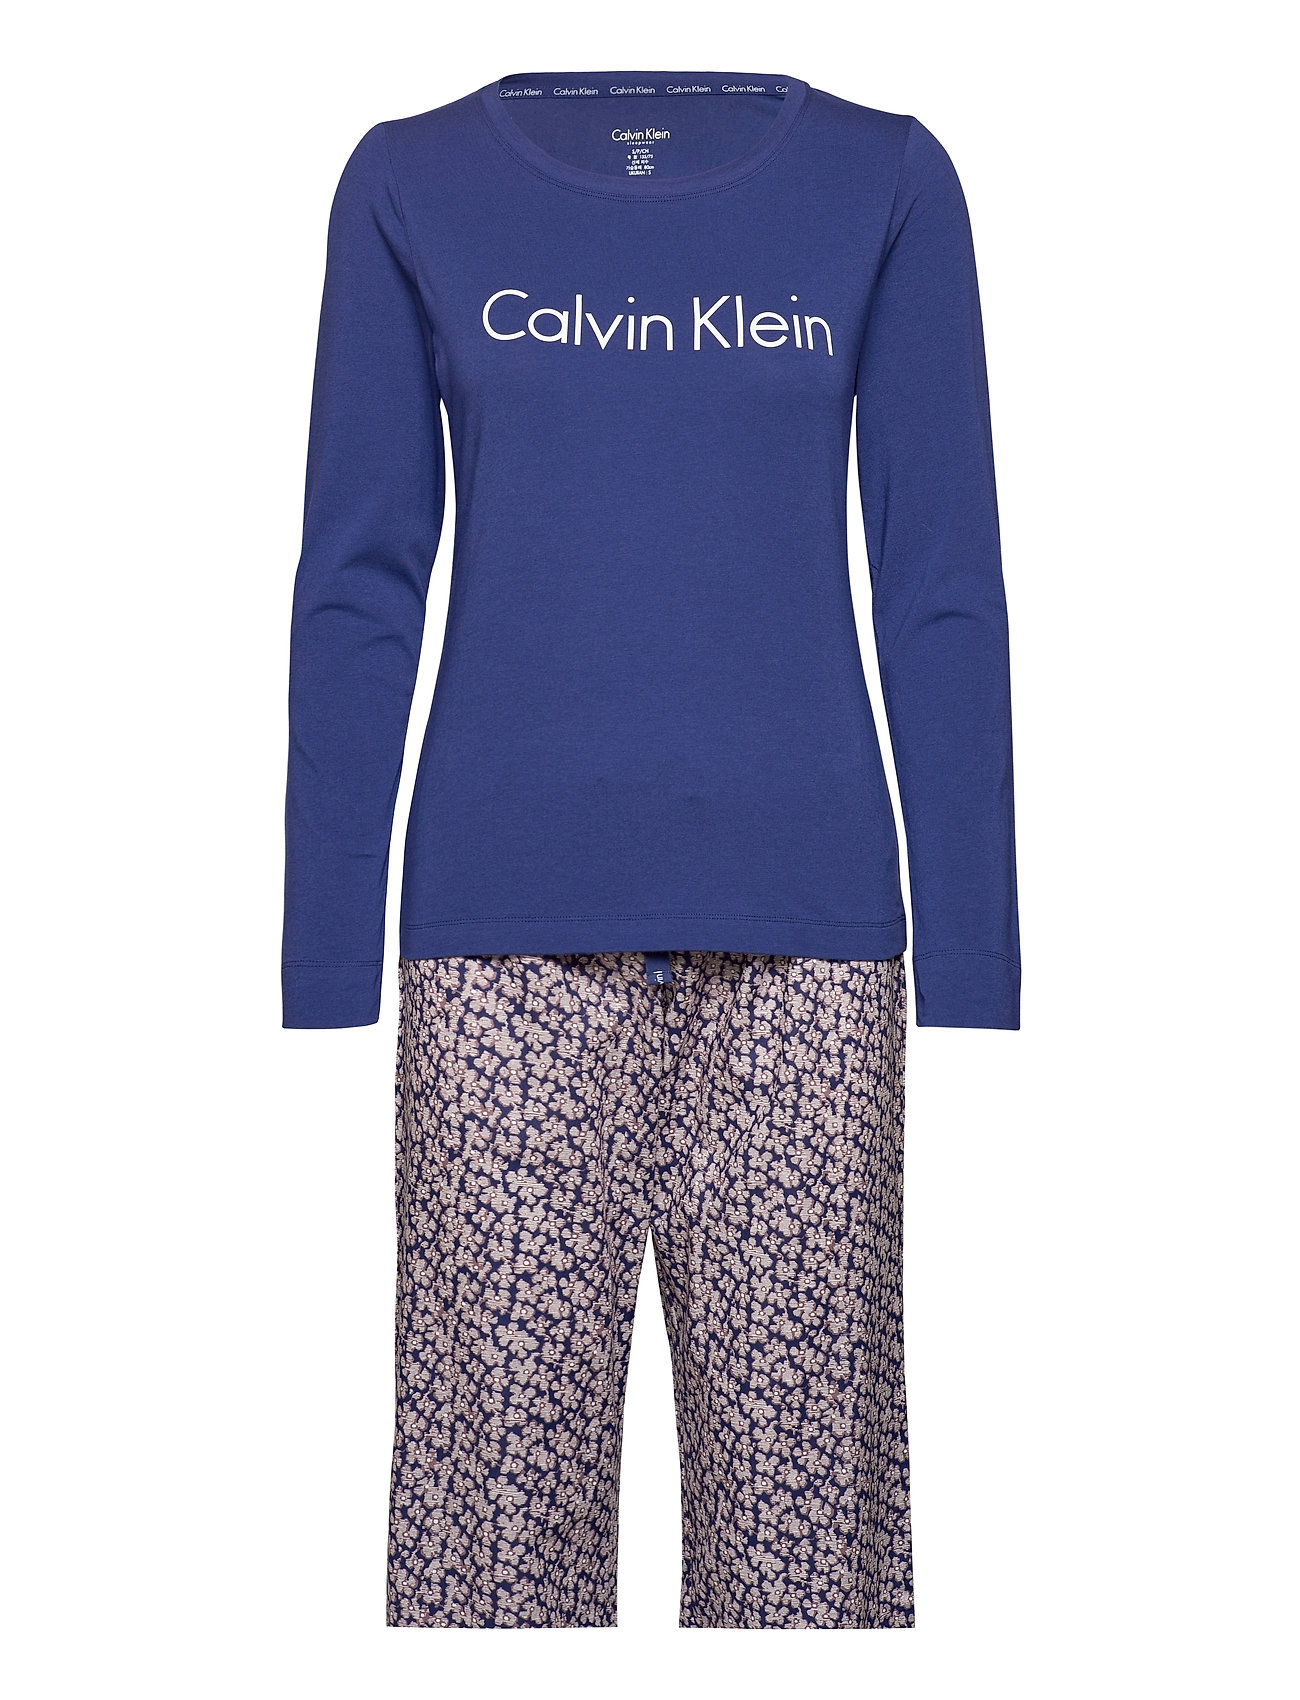 Calvin Klein pyjamas – L/S Pyjamas Nattøj Blå Calvin Klein til dame i BLUE/CRINKLE FLORAL Pashion.dk